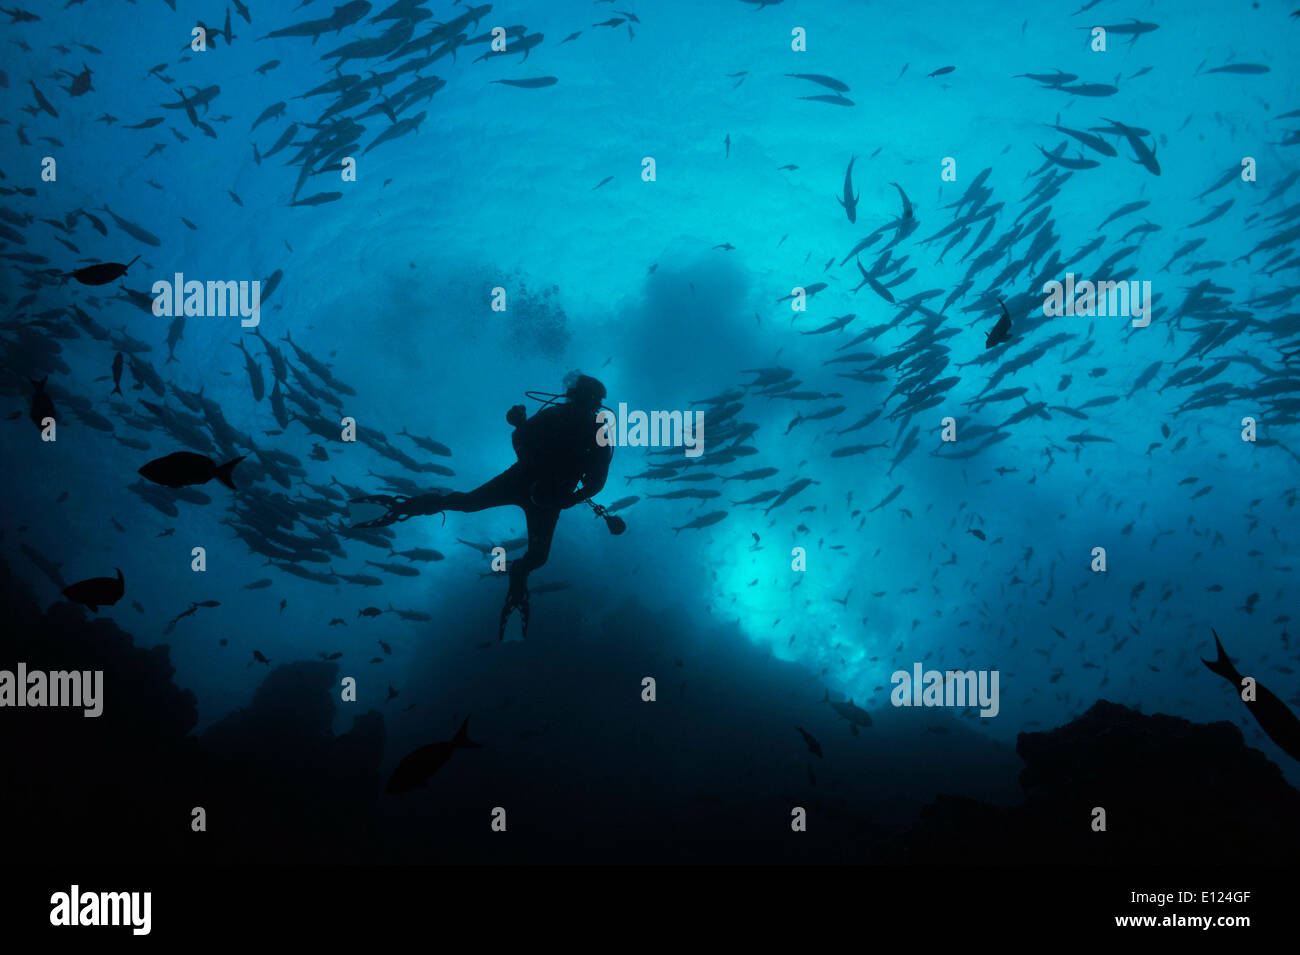 Diver silhouette Stock Photo